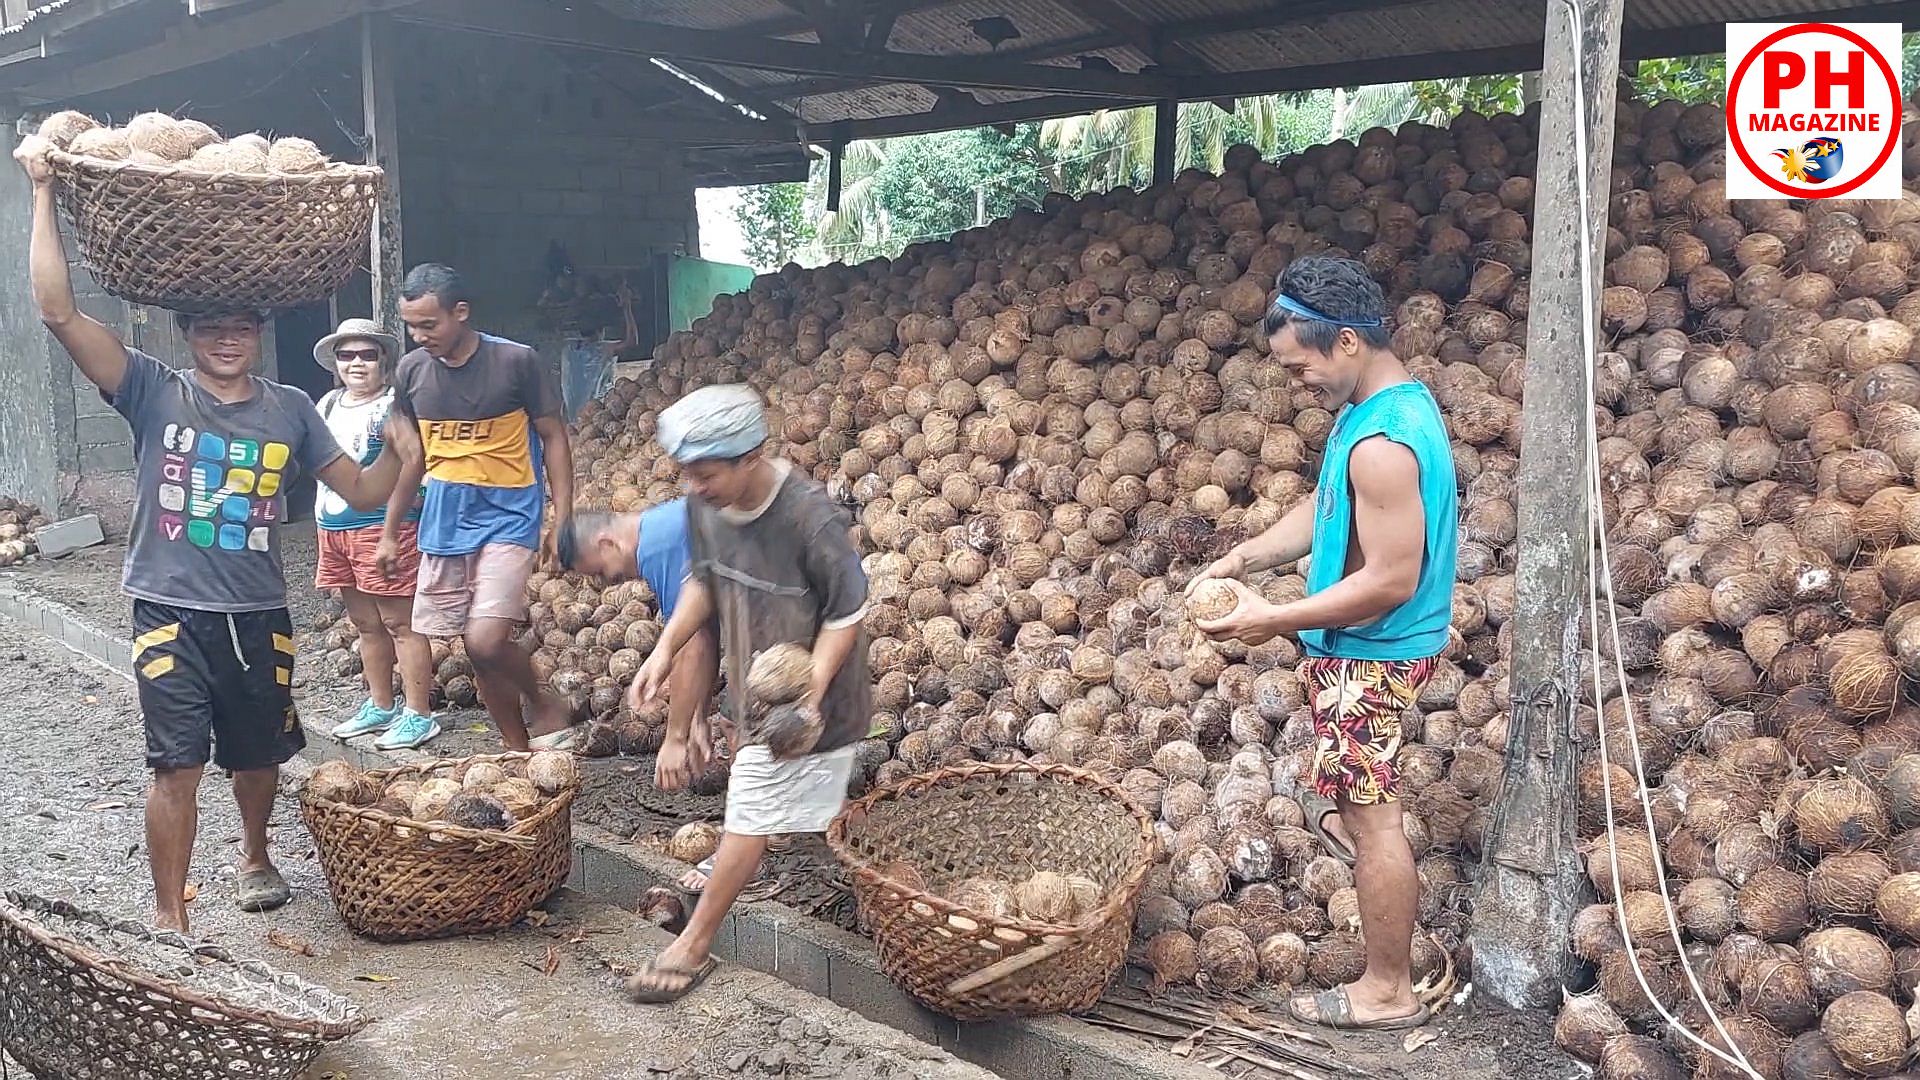 SIGHTS OF CAGAYAN DE ORO CITY & NORTHERN MINDANAO - MISAMIS ORIENTAL - Processing Coconuts in Balingoan